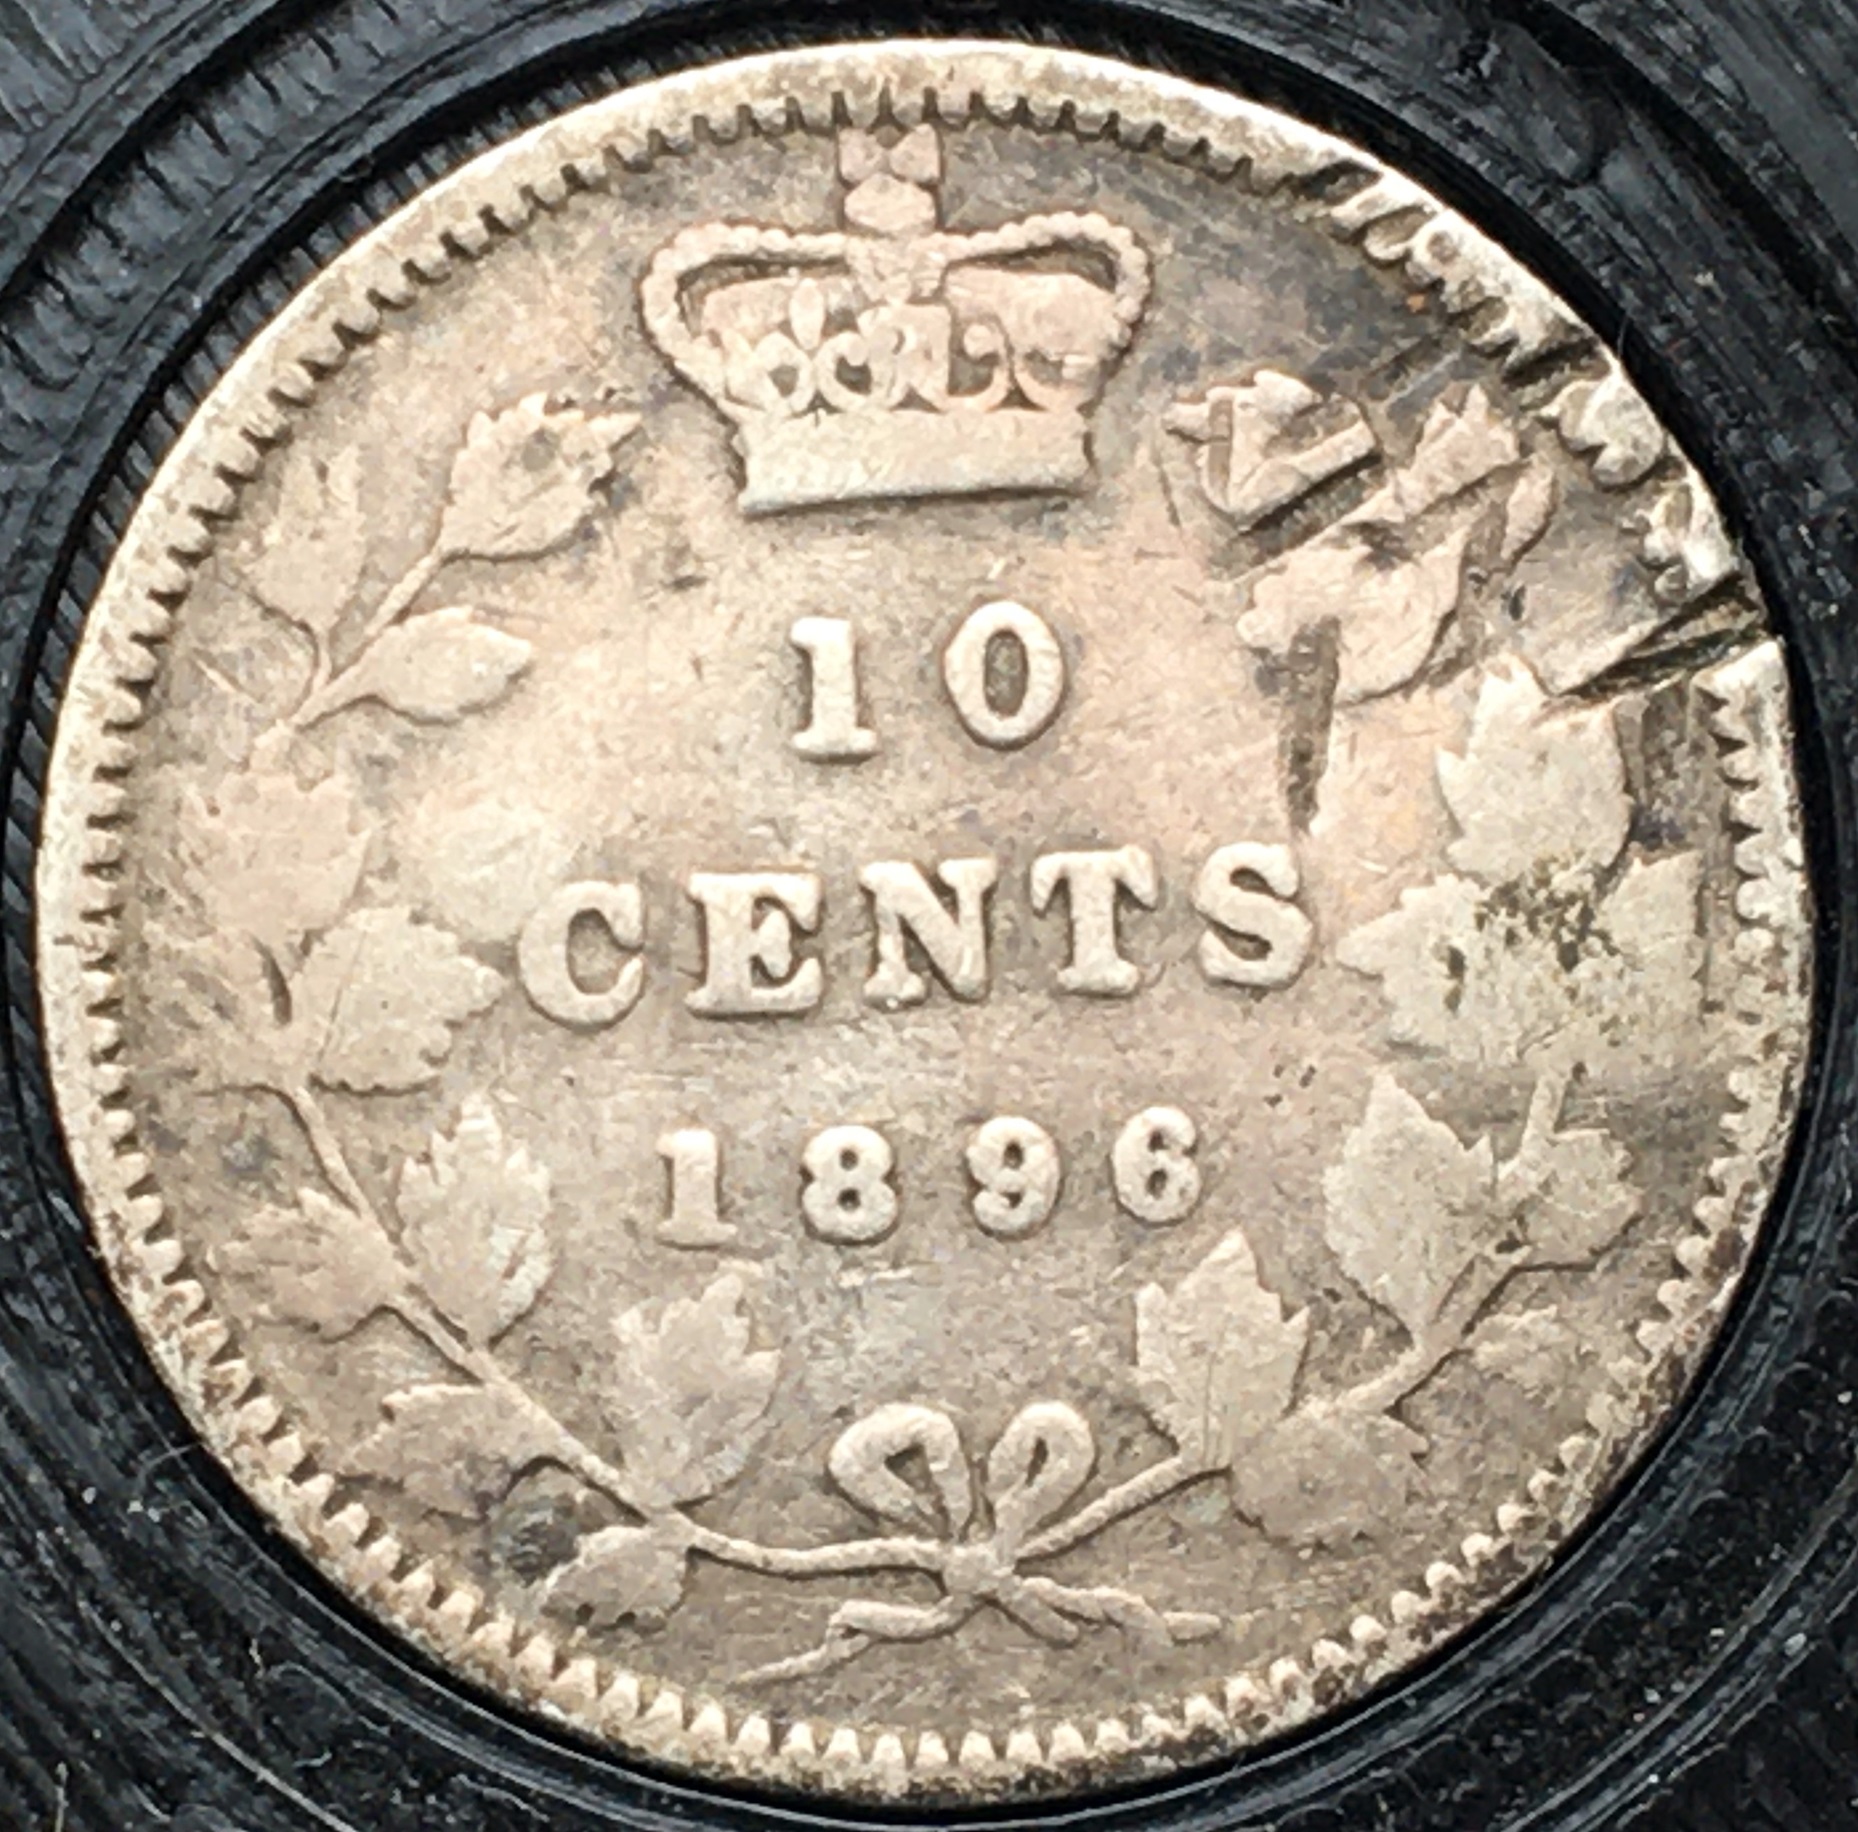 10 cents 1896 revers.JPG